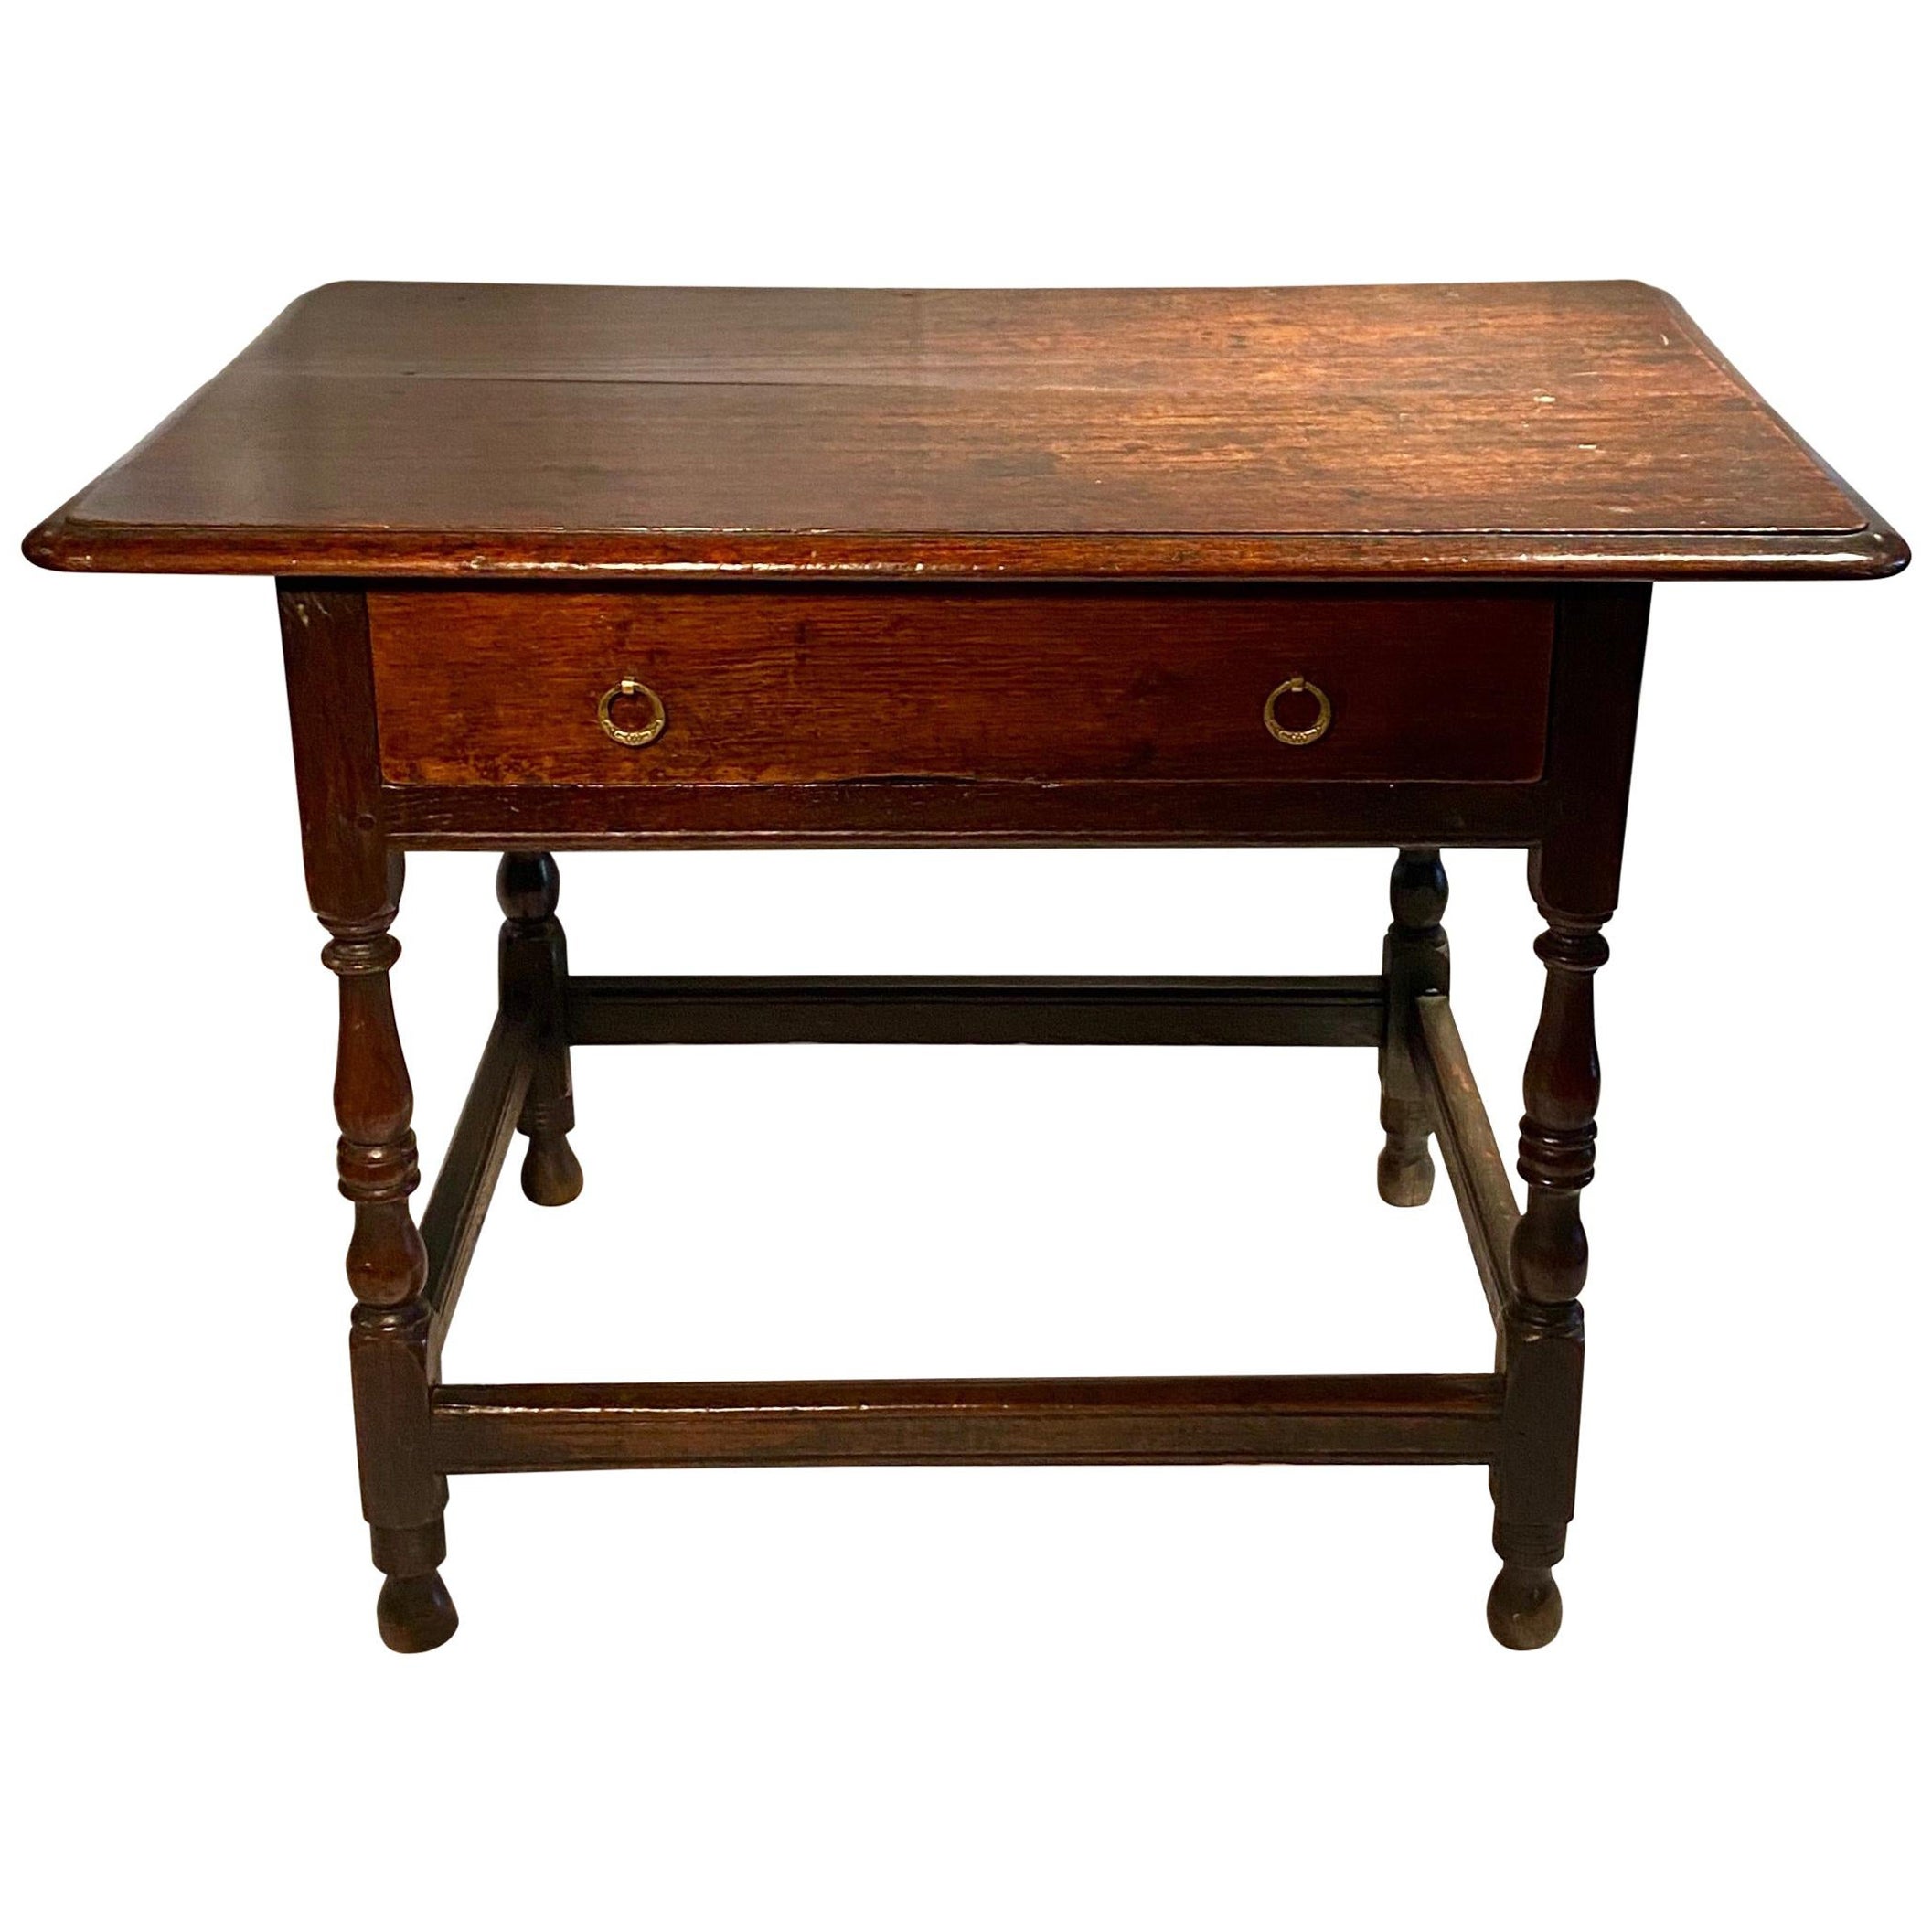 Englischer Eichenholztisch aus dem frühen 18. Jahrhundert, um 1720